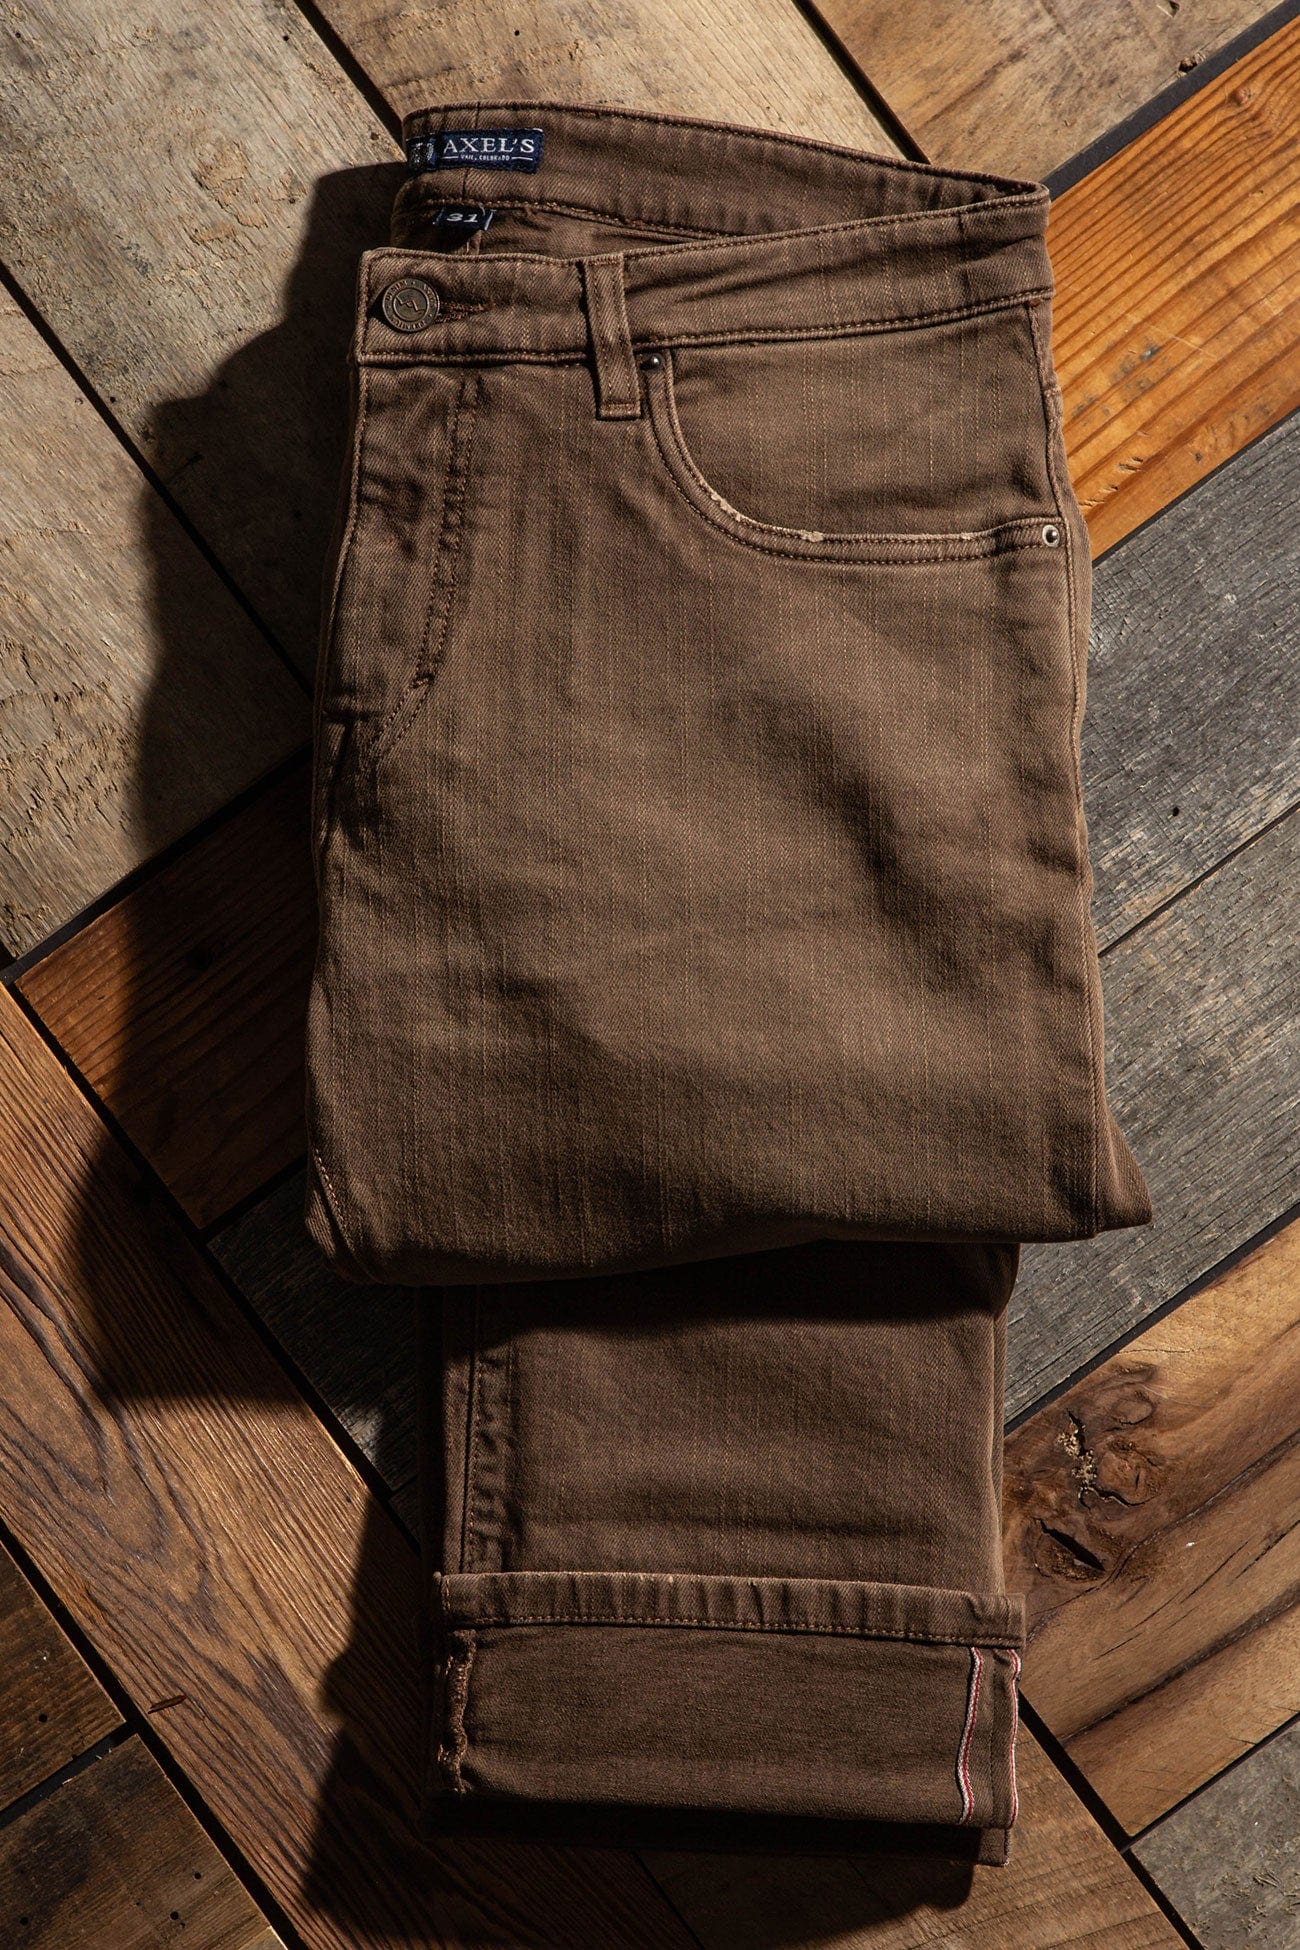 Axels Premium Denim Tucson Selvedge Denim In Liquirizia Mens - Pants - 5 Pocket